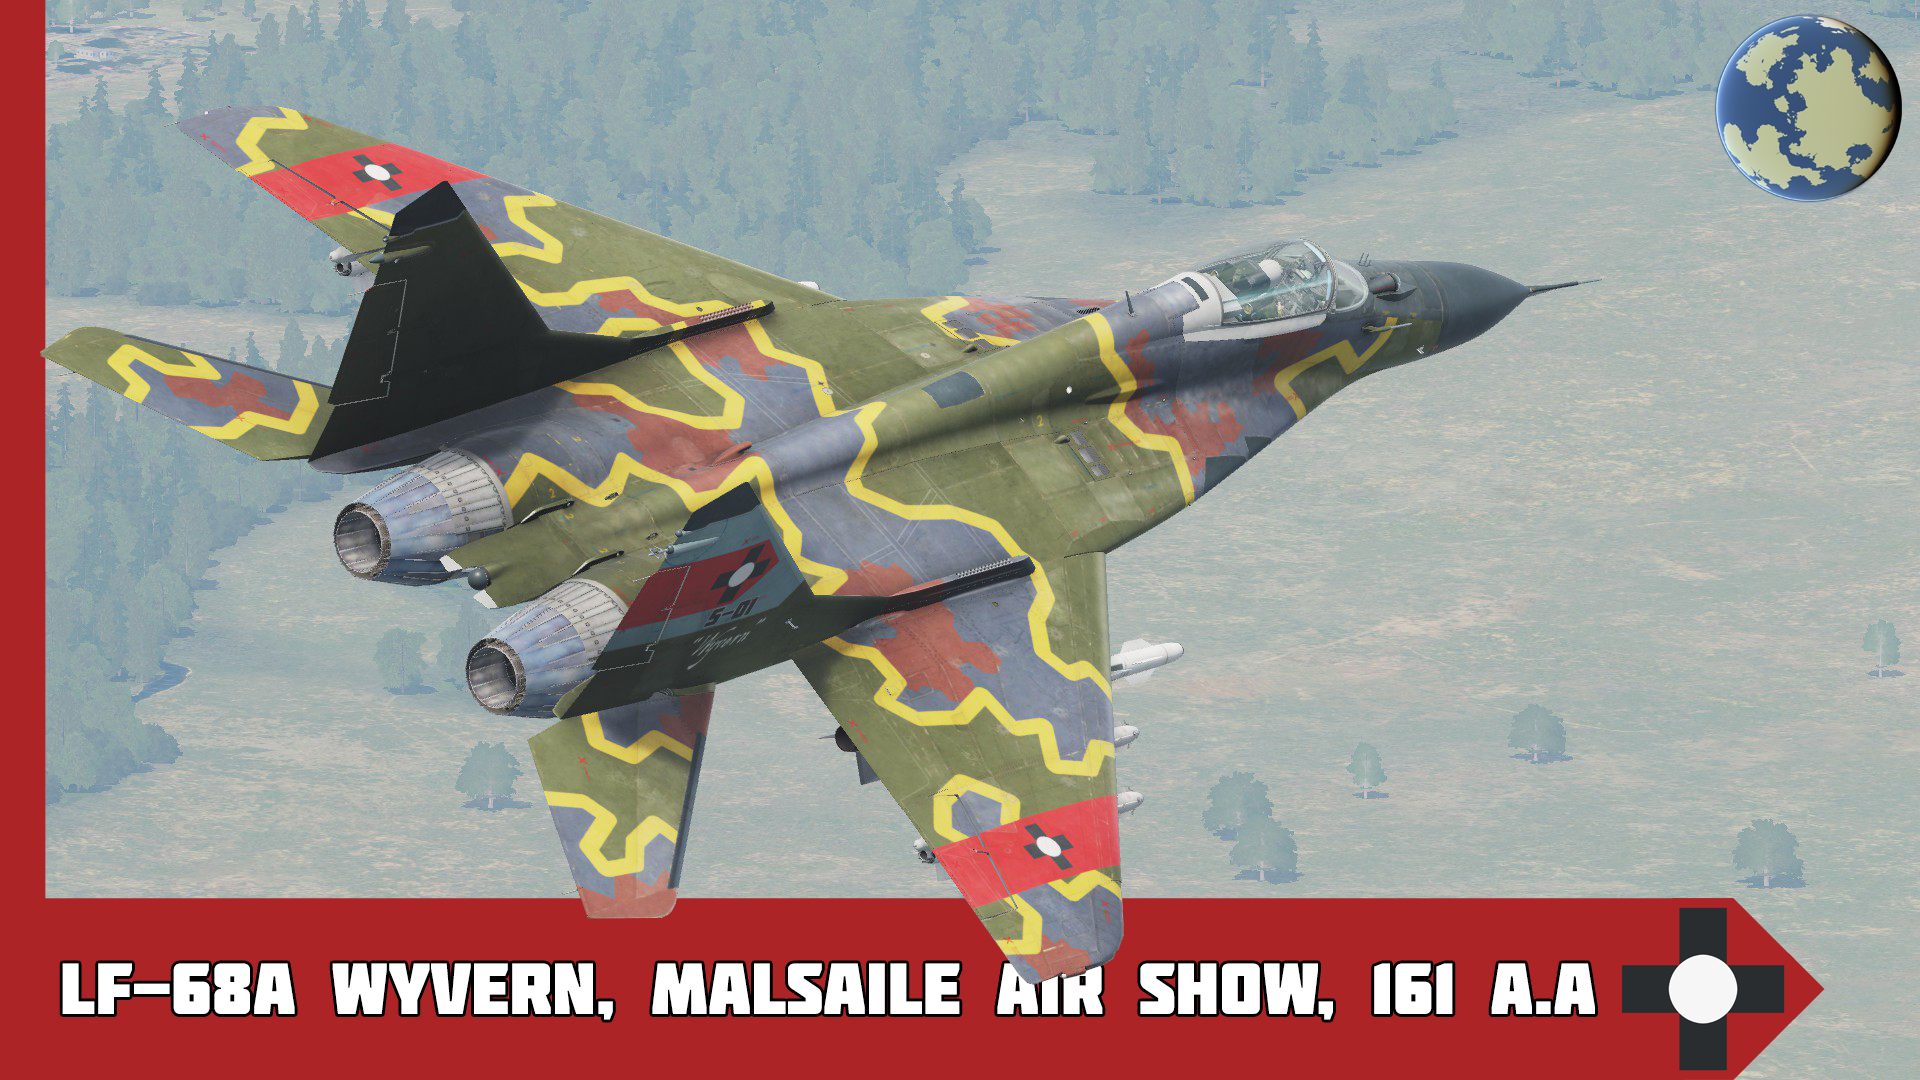 LF-68A Wyvern, Malsaile Air Show, 161 A.A (MiG-29A)